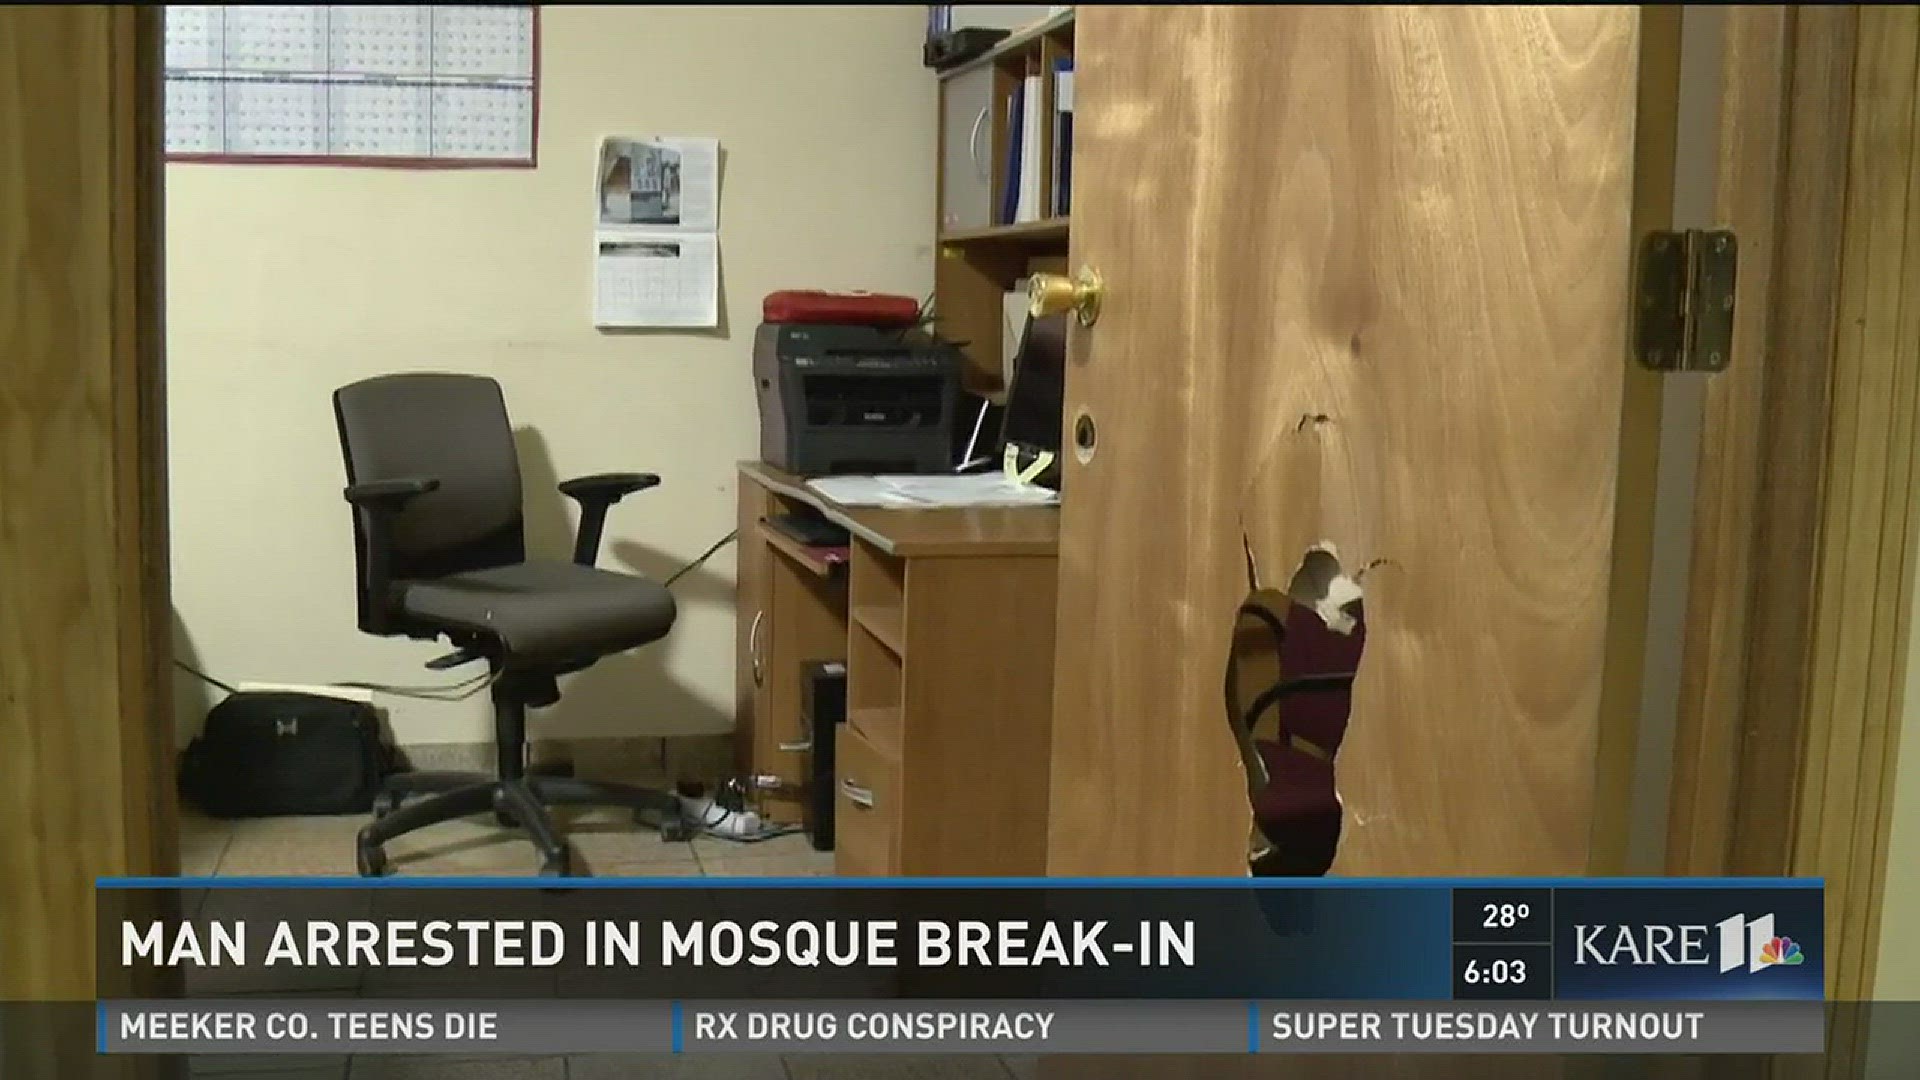 Man arrested in mosque break-in